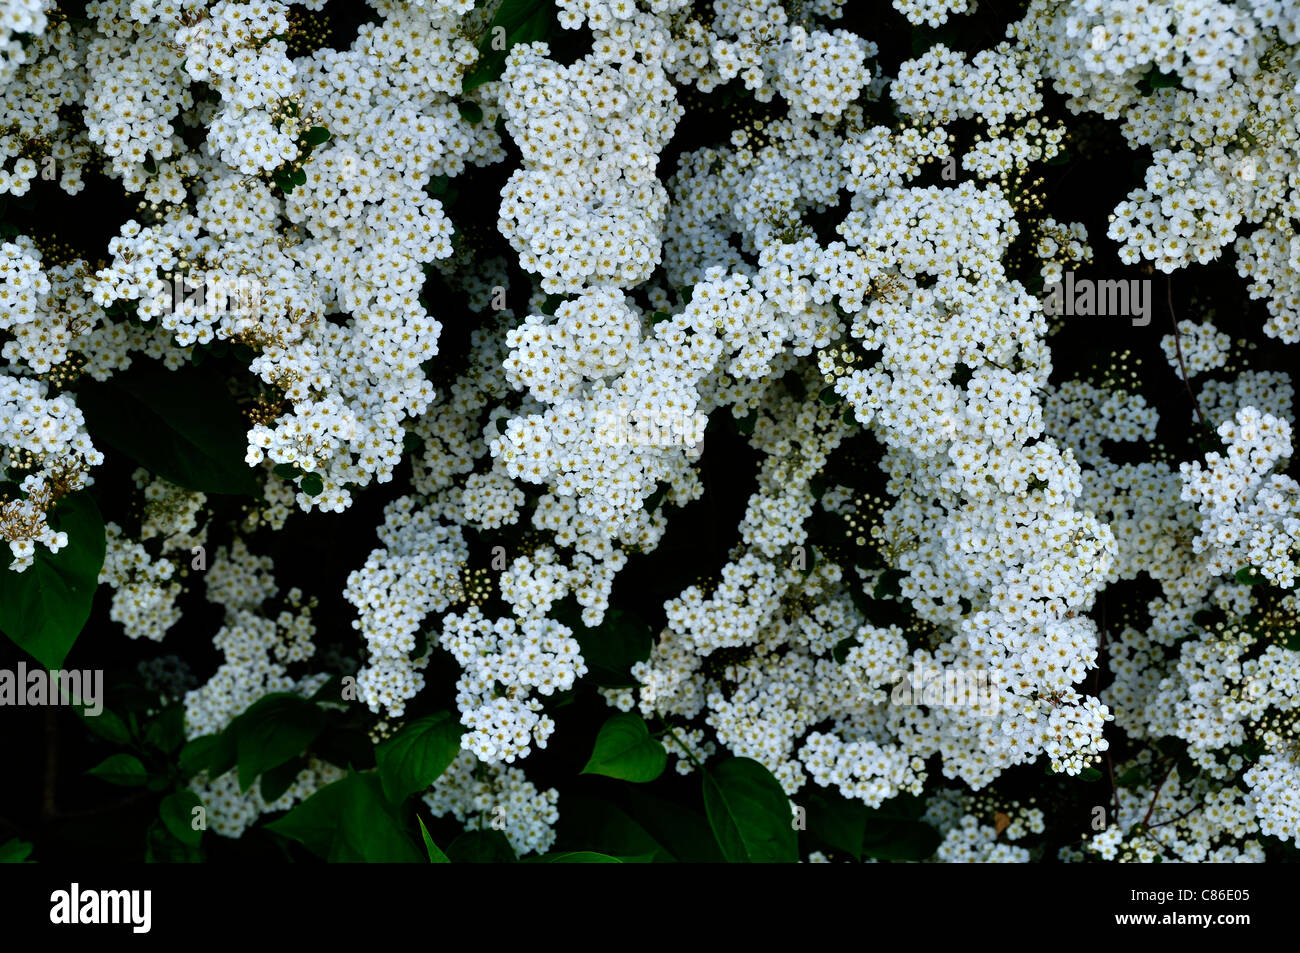 Spirea (Spiraea X vanhouttei) in voller Blüte im Garten Stockfotografie ...